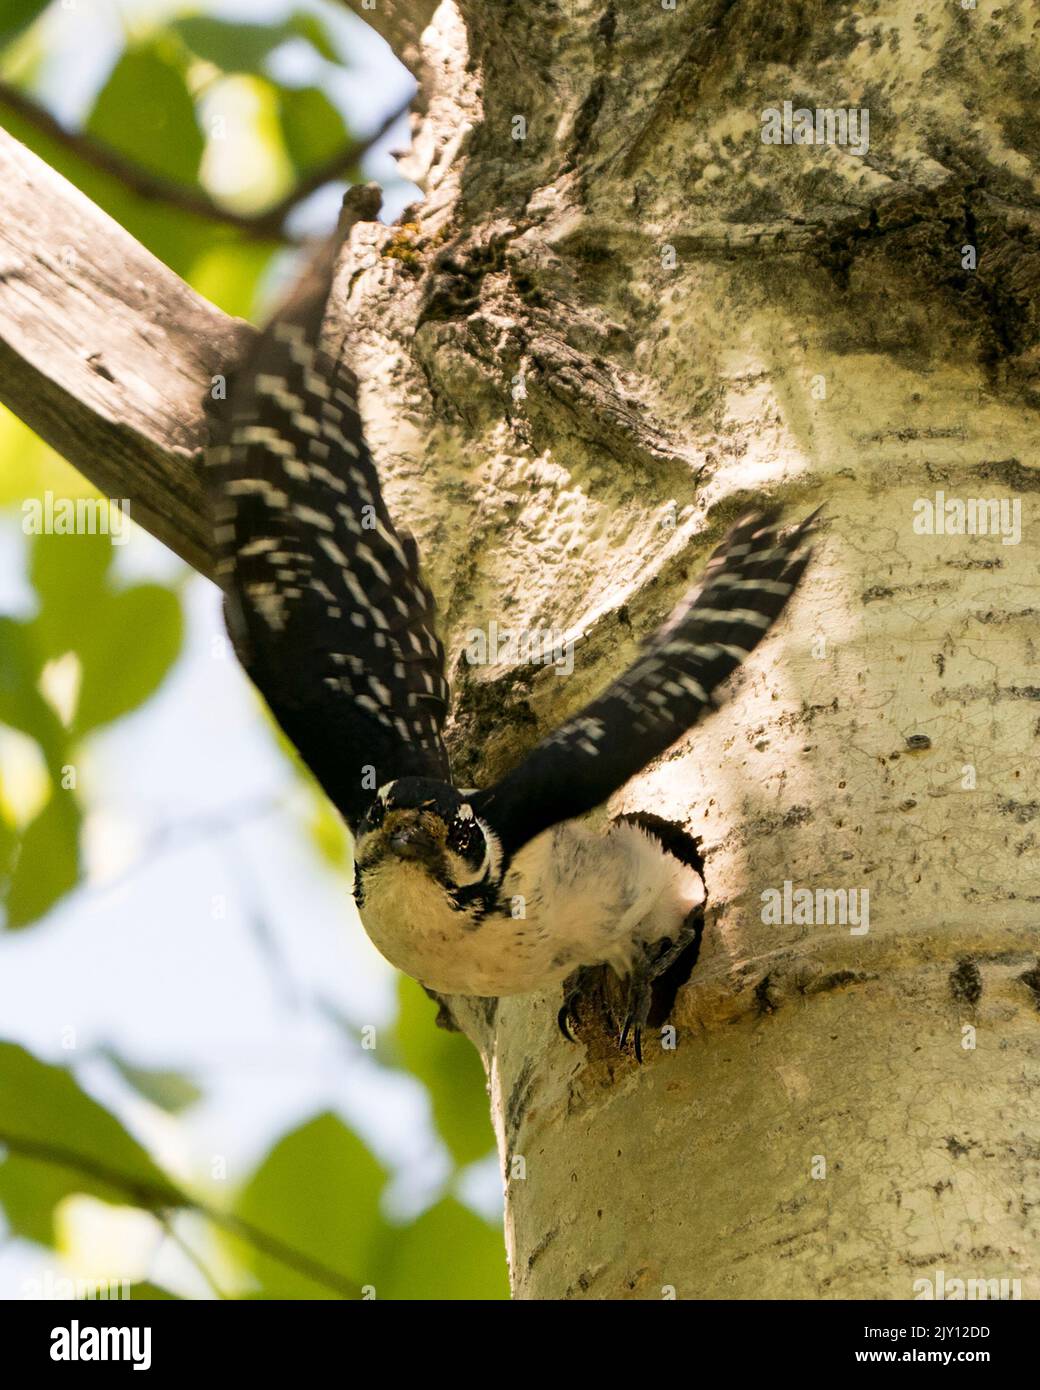 Picchio che esce dalla sua casa nido di uccelli con ali sparse con sfondo sfocato nel suo ambiente e habitat circostante. Immagine pelosa di Woodpecker Foto Stock